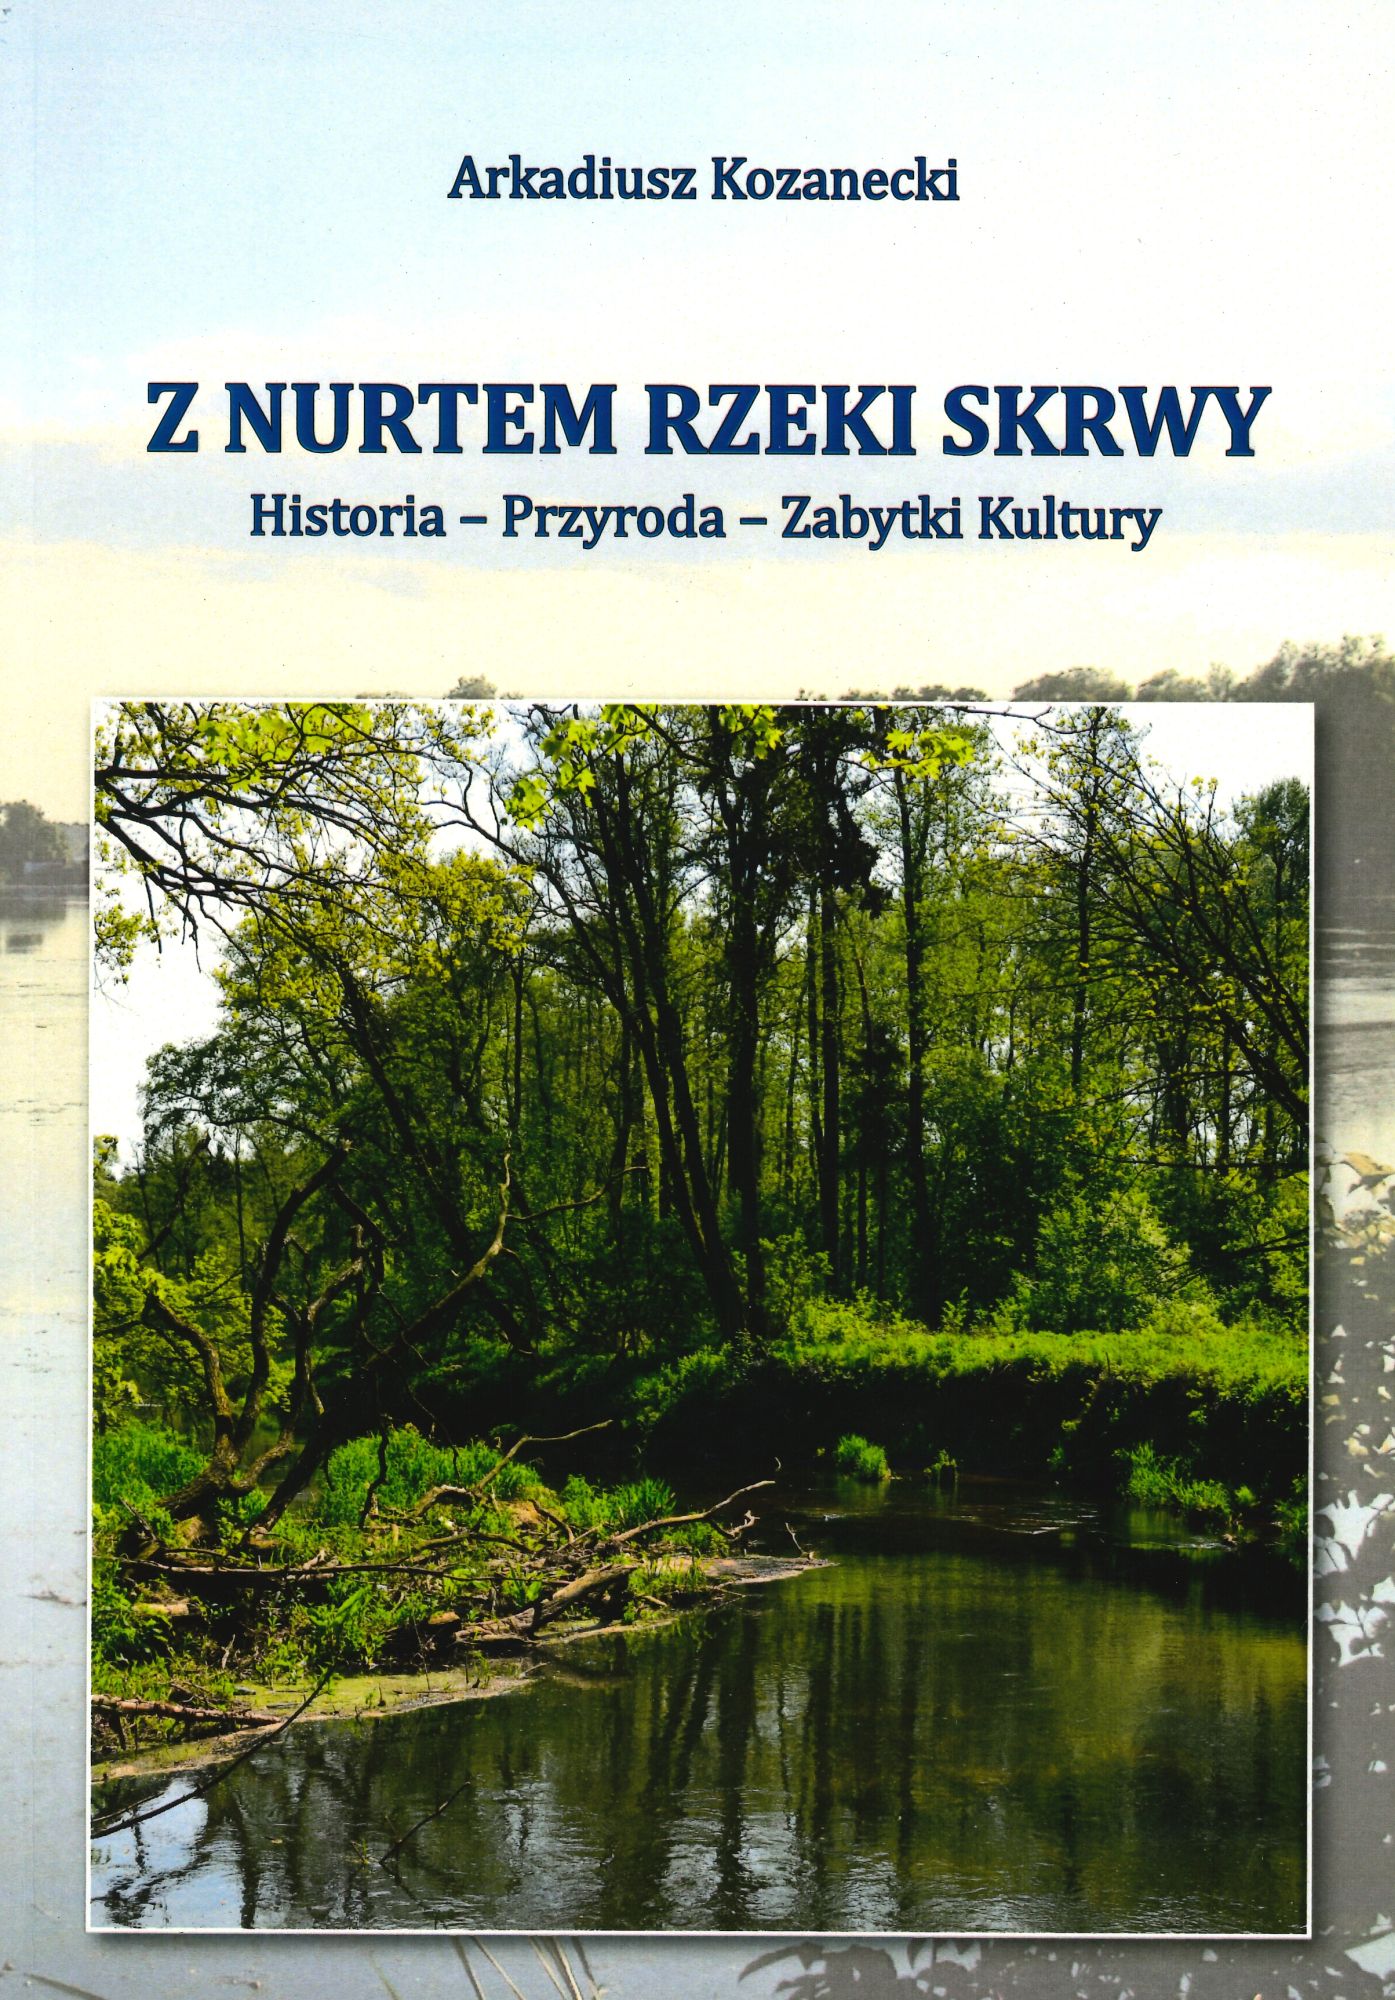 Arkadiusz Kozanecki: Z nurtem rzeki Skrwy: historia, przyroda, zabytki kultury, Wydawnictwo Korepetytor, Pock 2015, 217 s.; il.